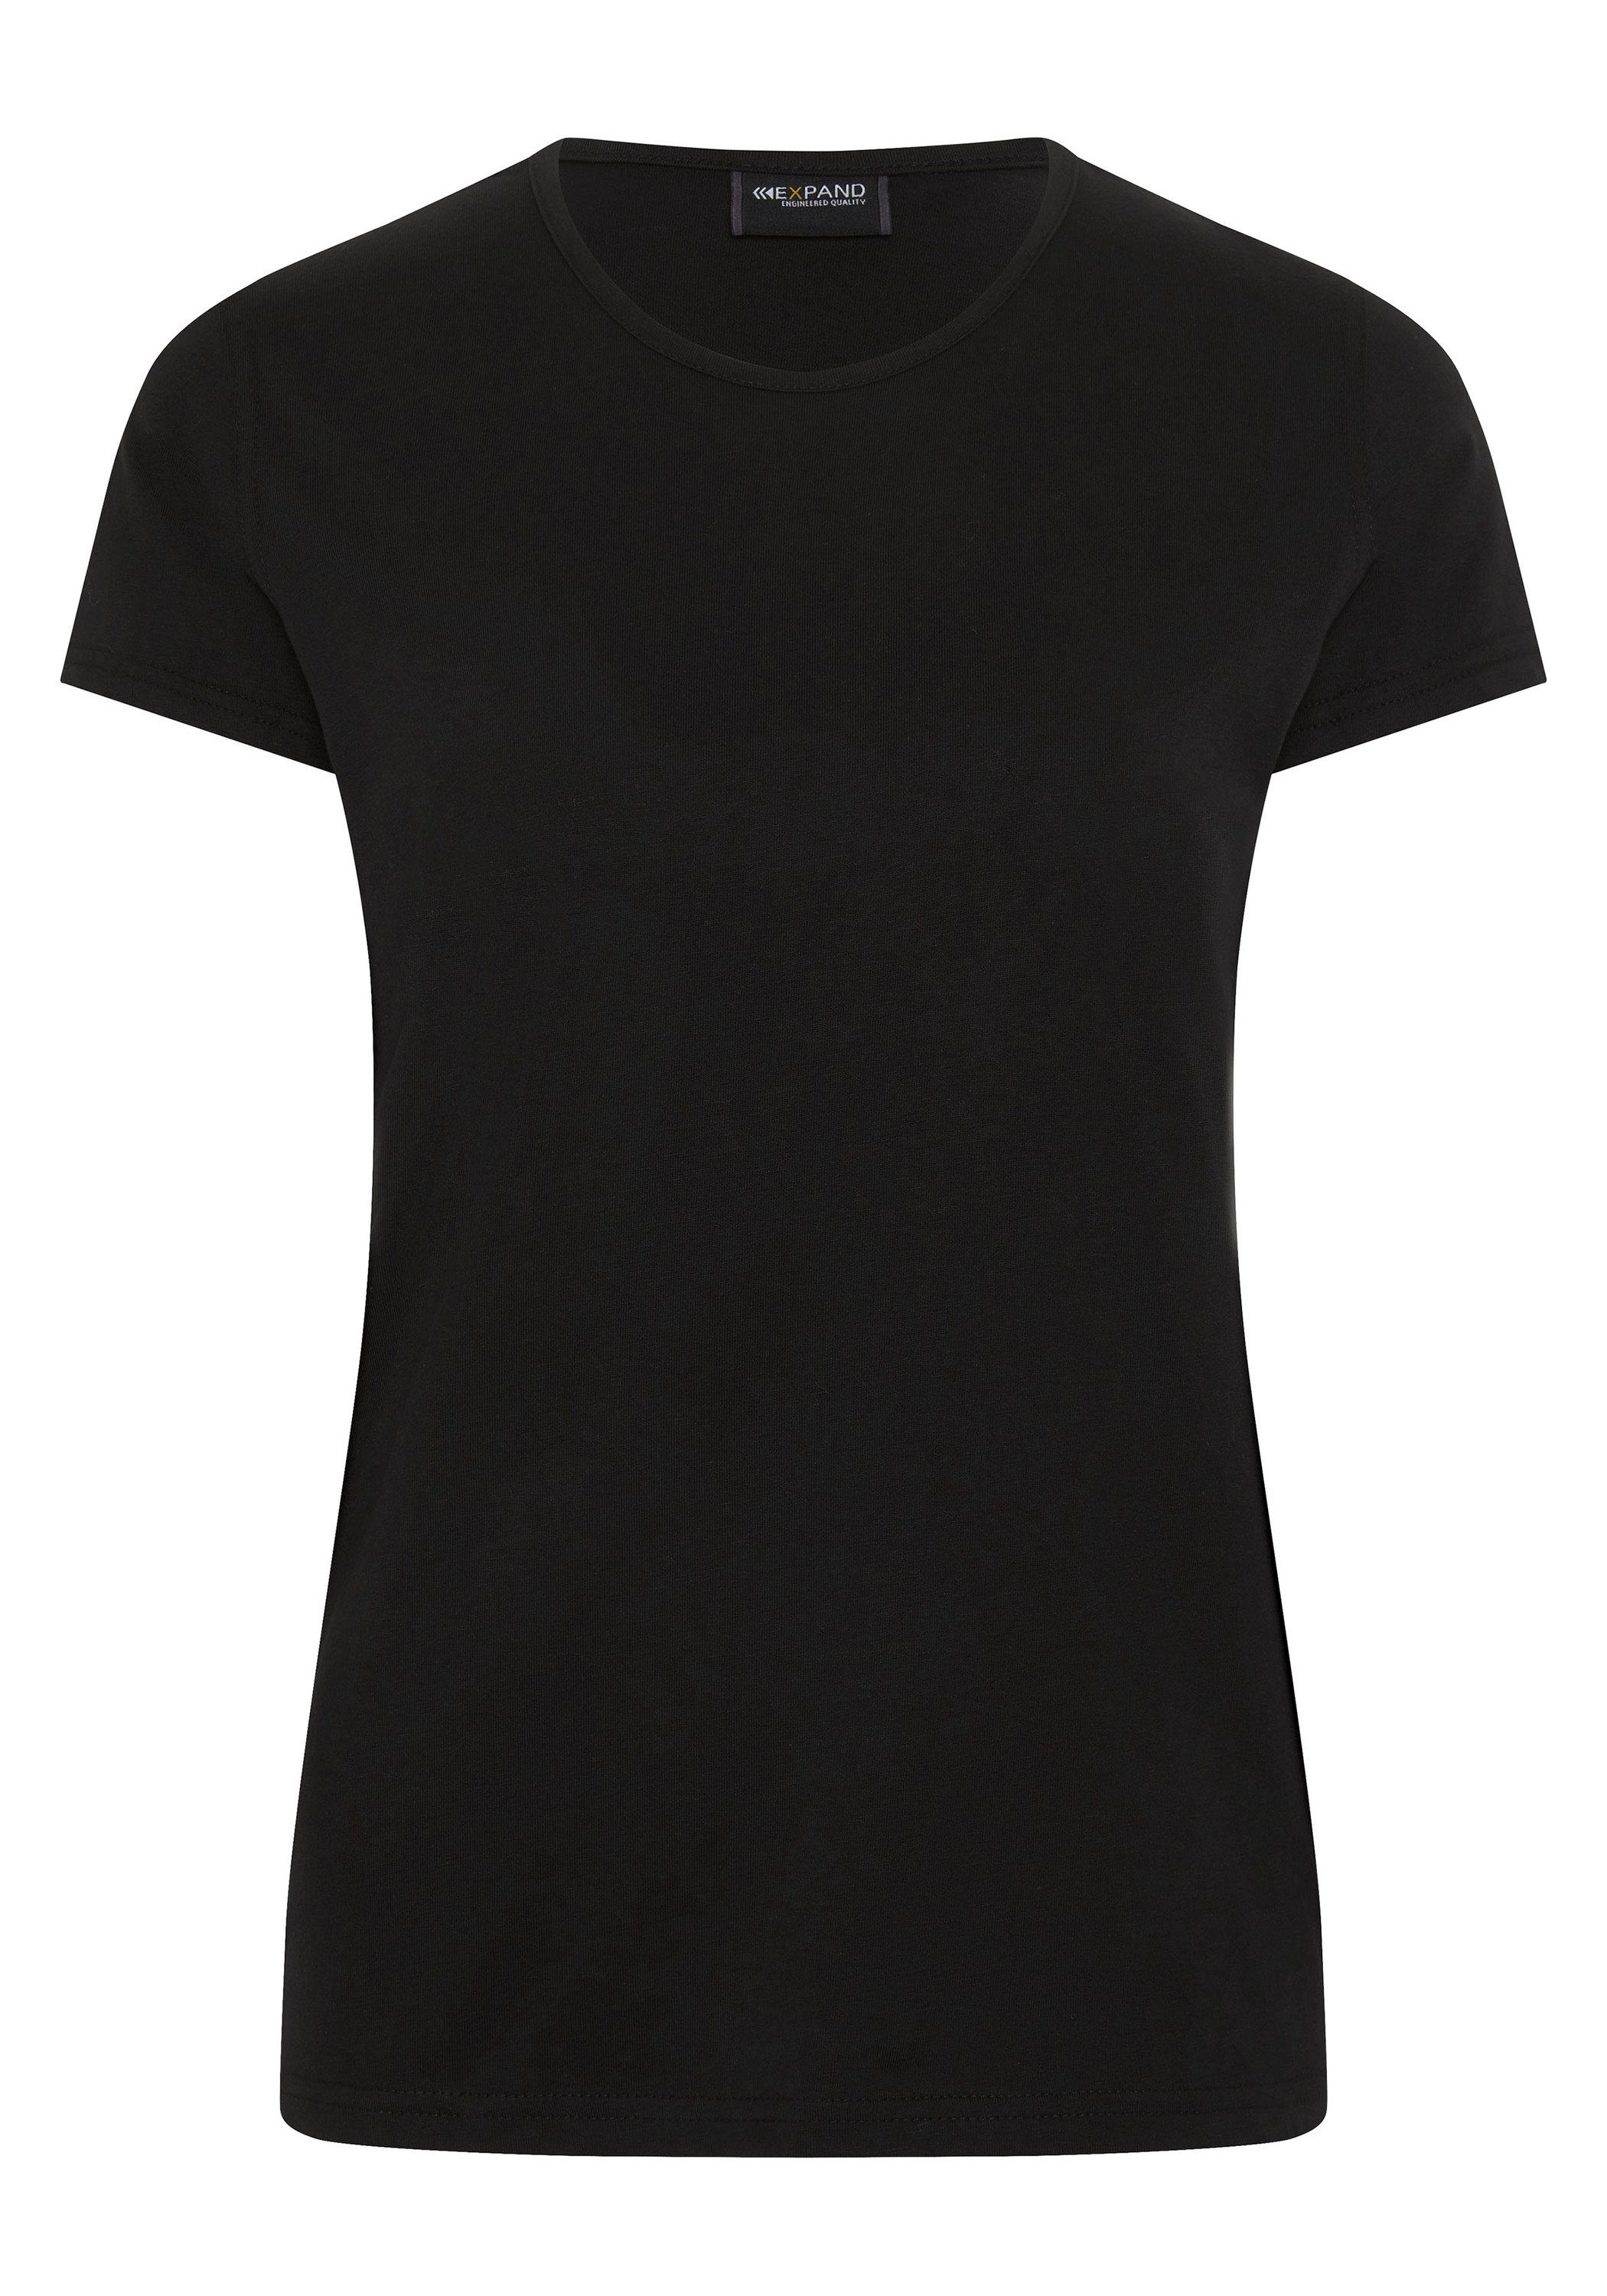 Expand T-Shirt in schwarz vielen Farben